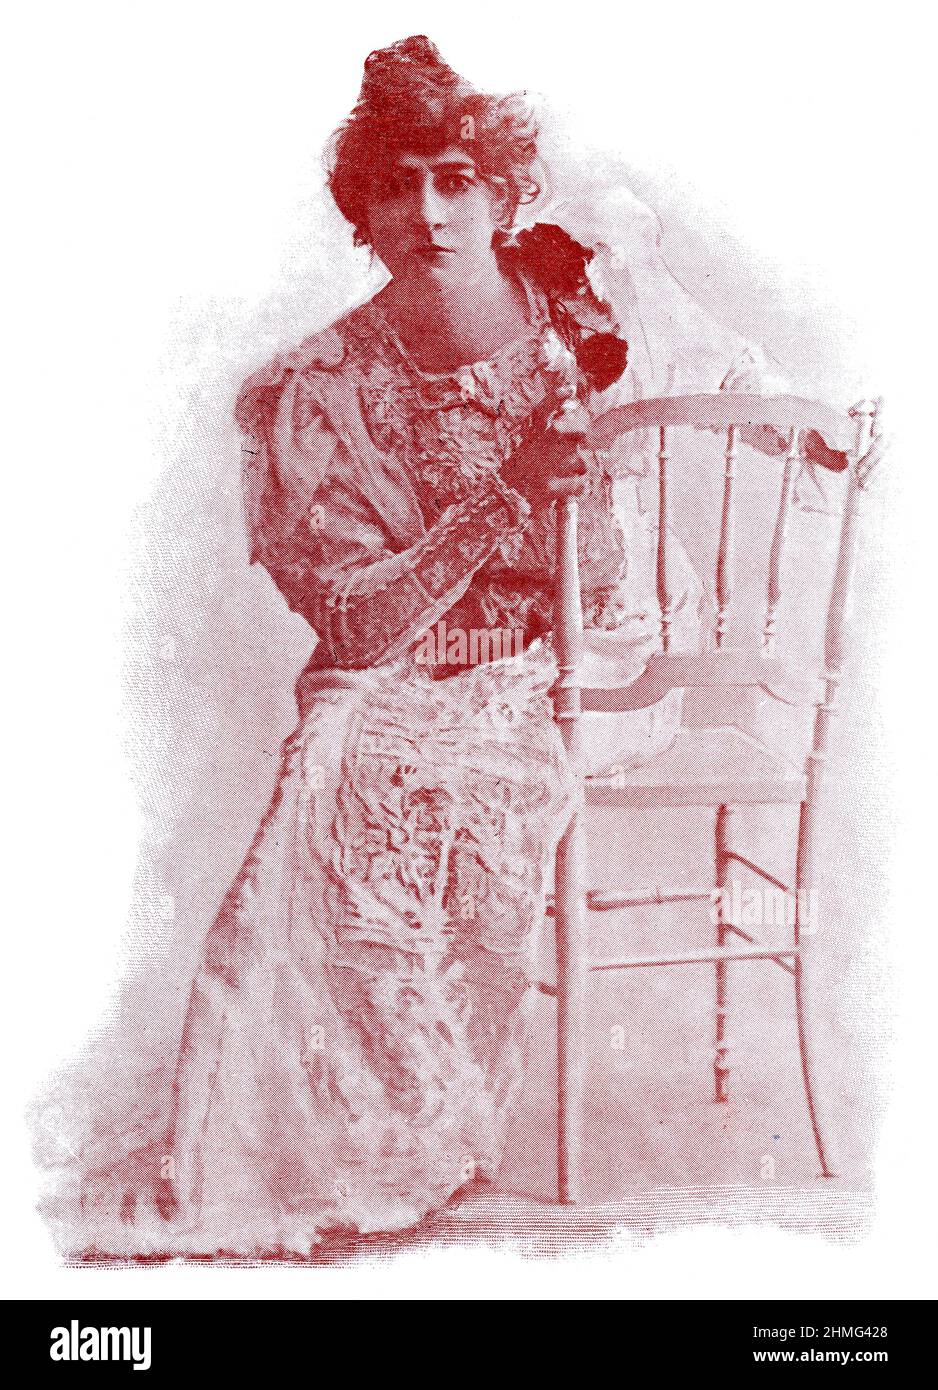 Ritratto di Georgette Leblanc, soprano operistico francese, attrice, autore. Immagine della rivista teatrale francese-tedesca 'Das Album', 1898. Foto Stock